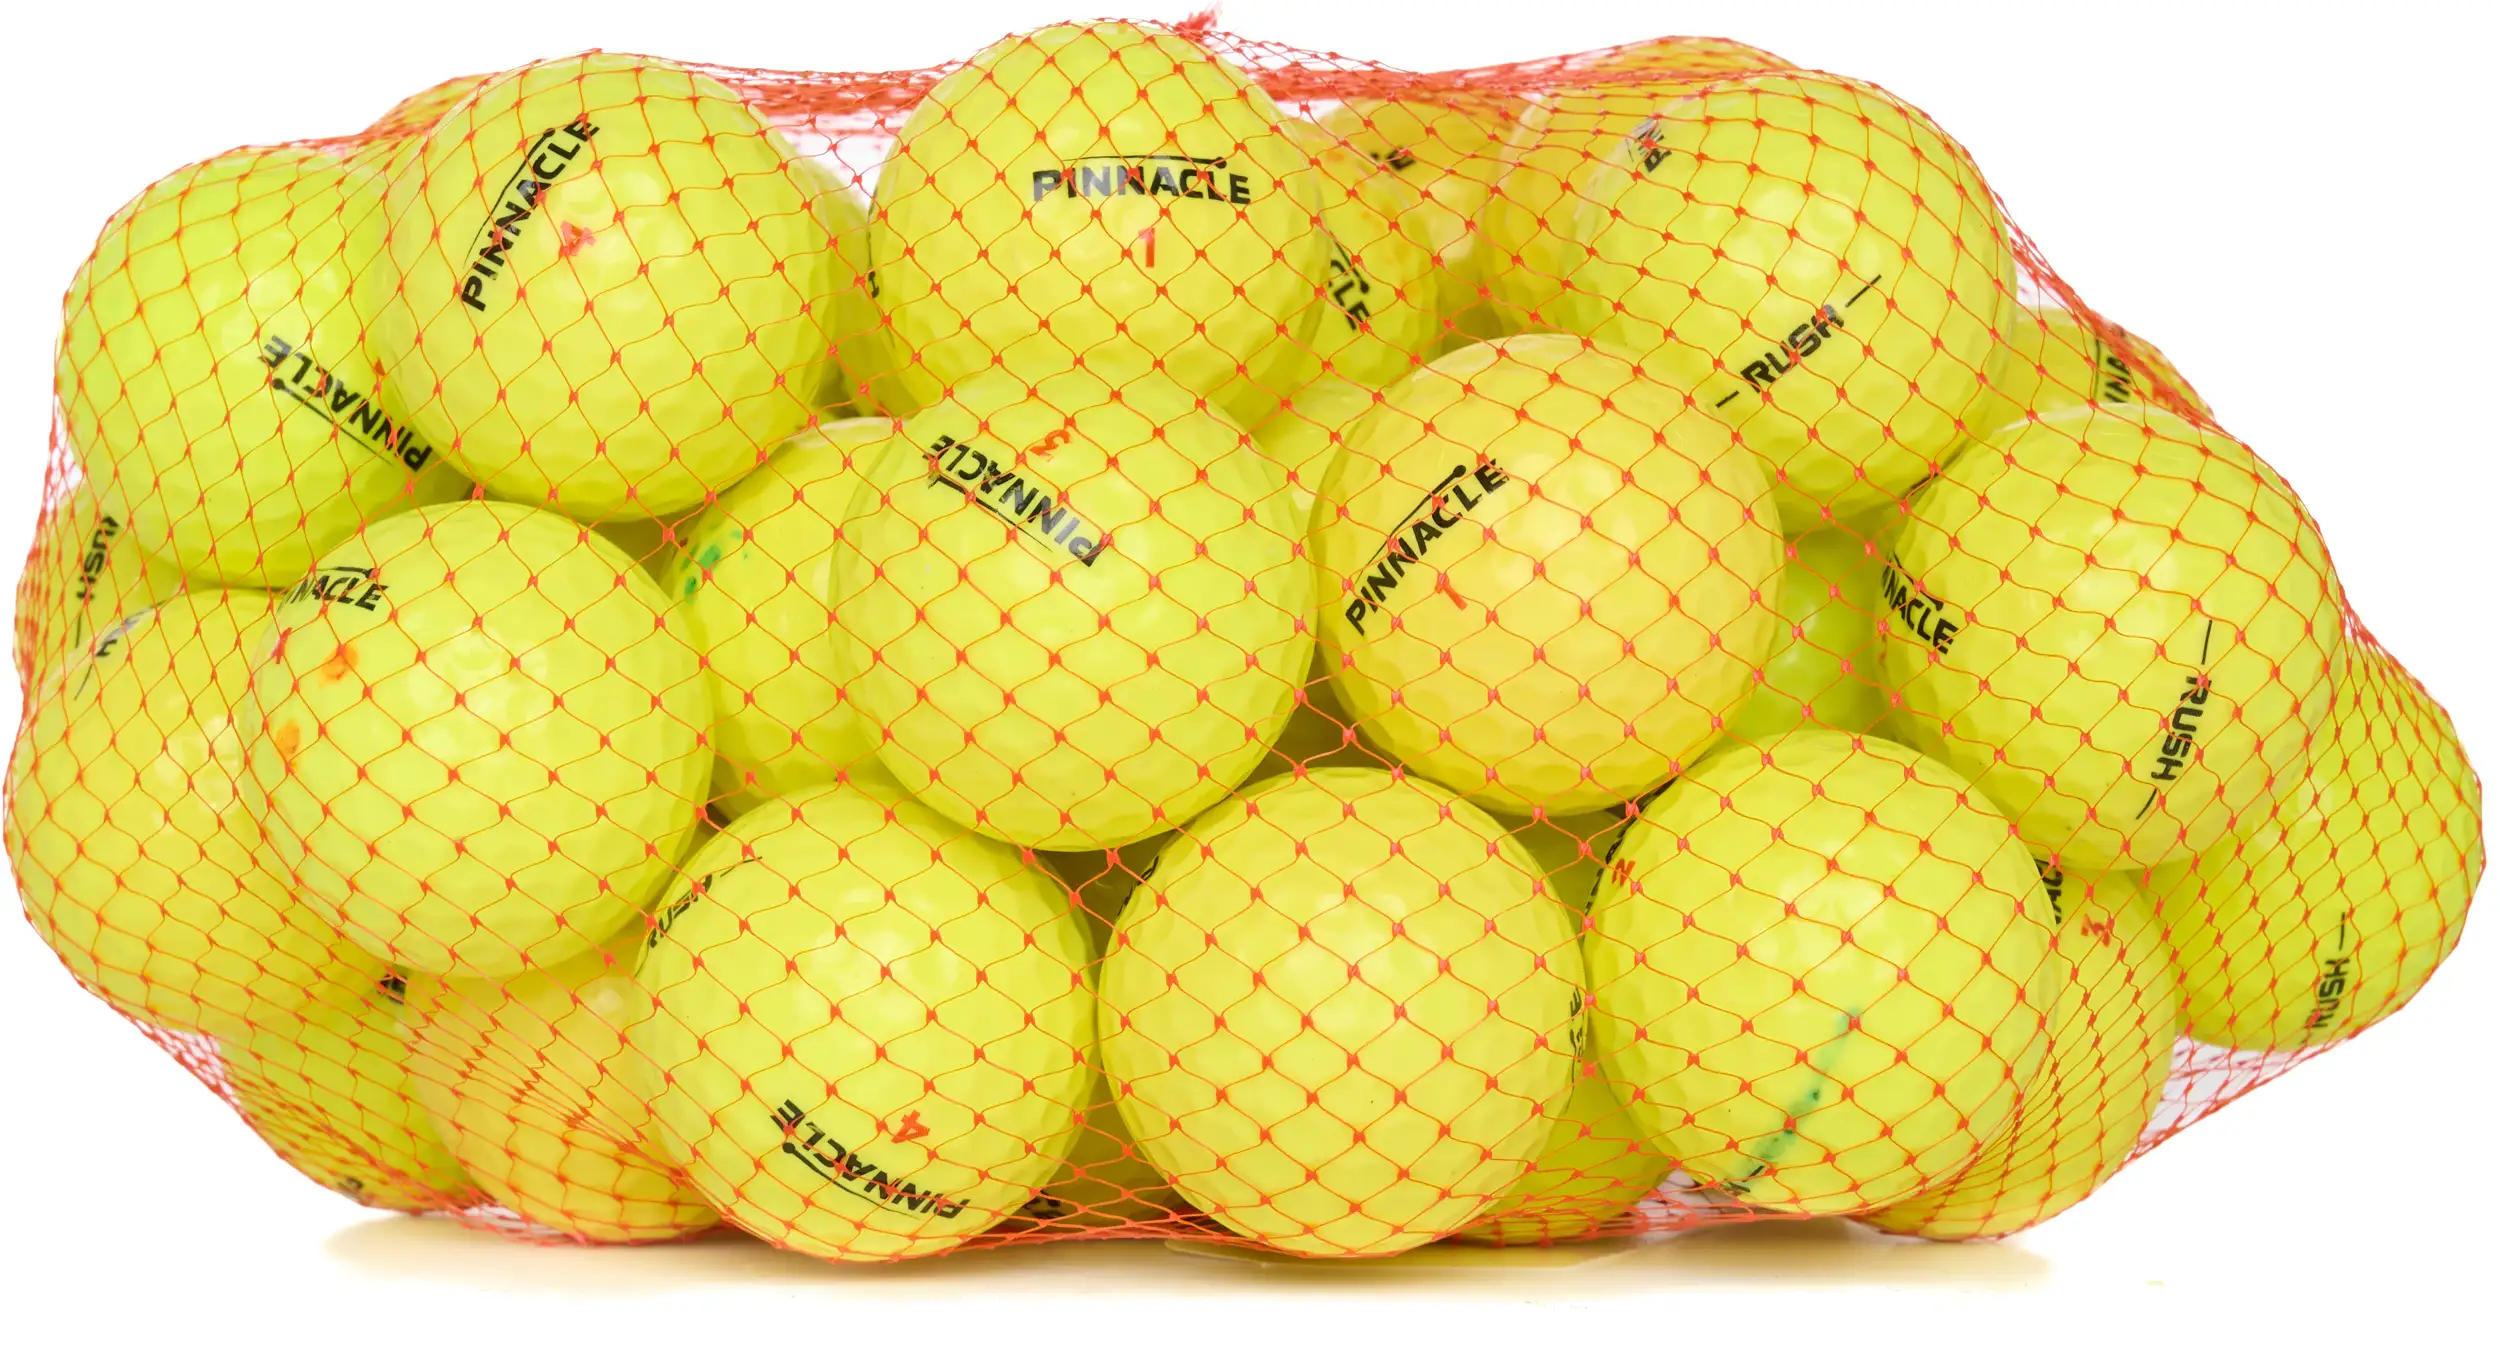 50 Pinnacle Rush Lakeballs, yellow